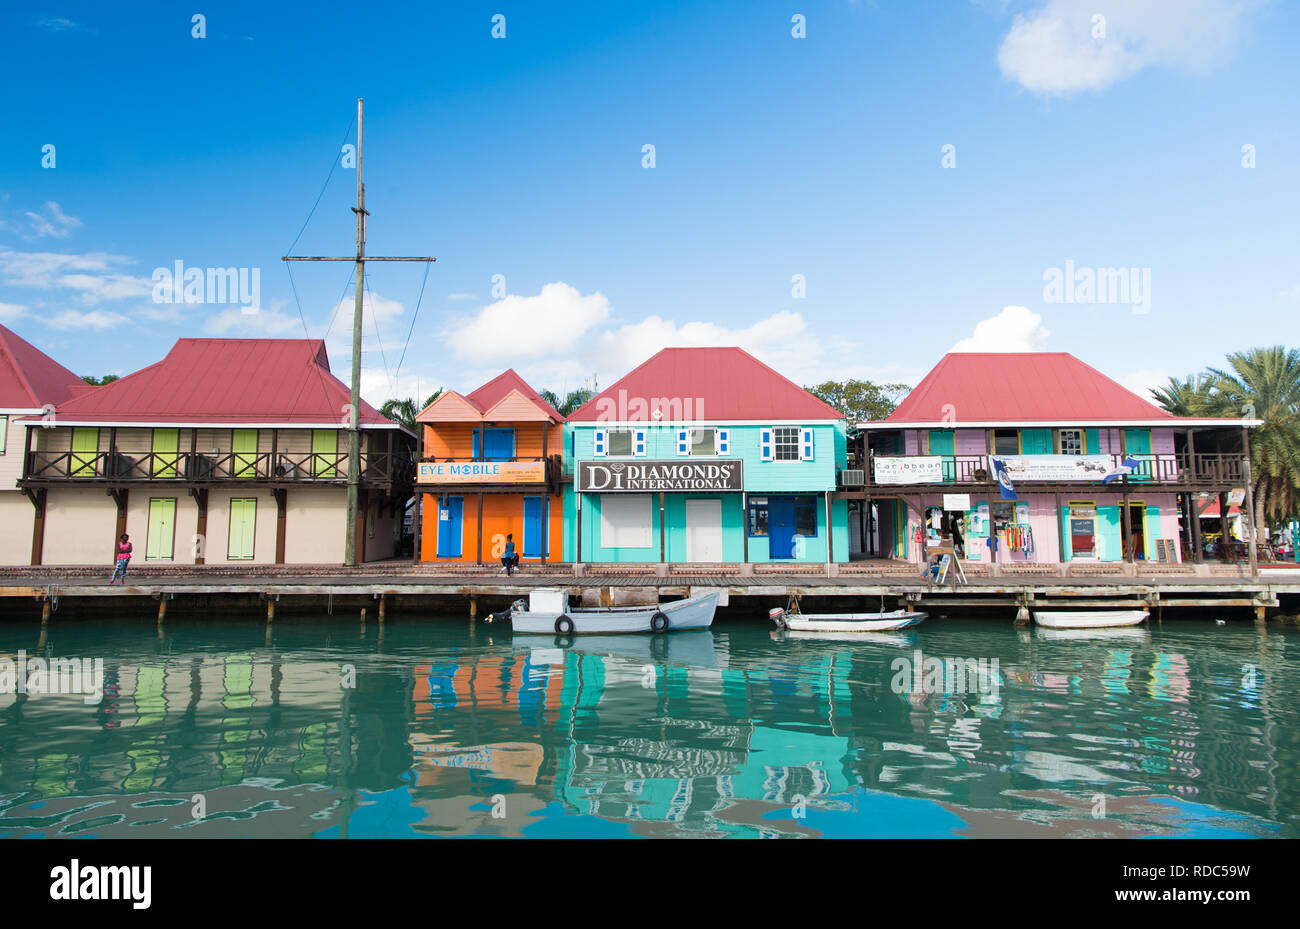 St Johns, Antigua - Marzo 05, 2016: barche ormeggiate in mare al molo del villaggio con case a cielo blu. Vacanze estive sull isola tropicale. La scoperta e l'avventura. Wanderlust. Foto Stock